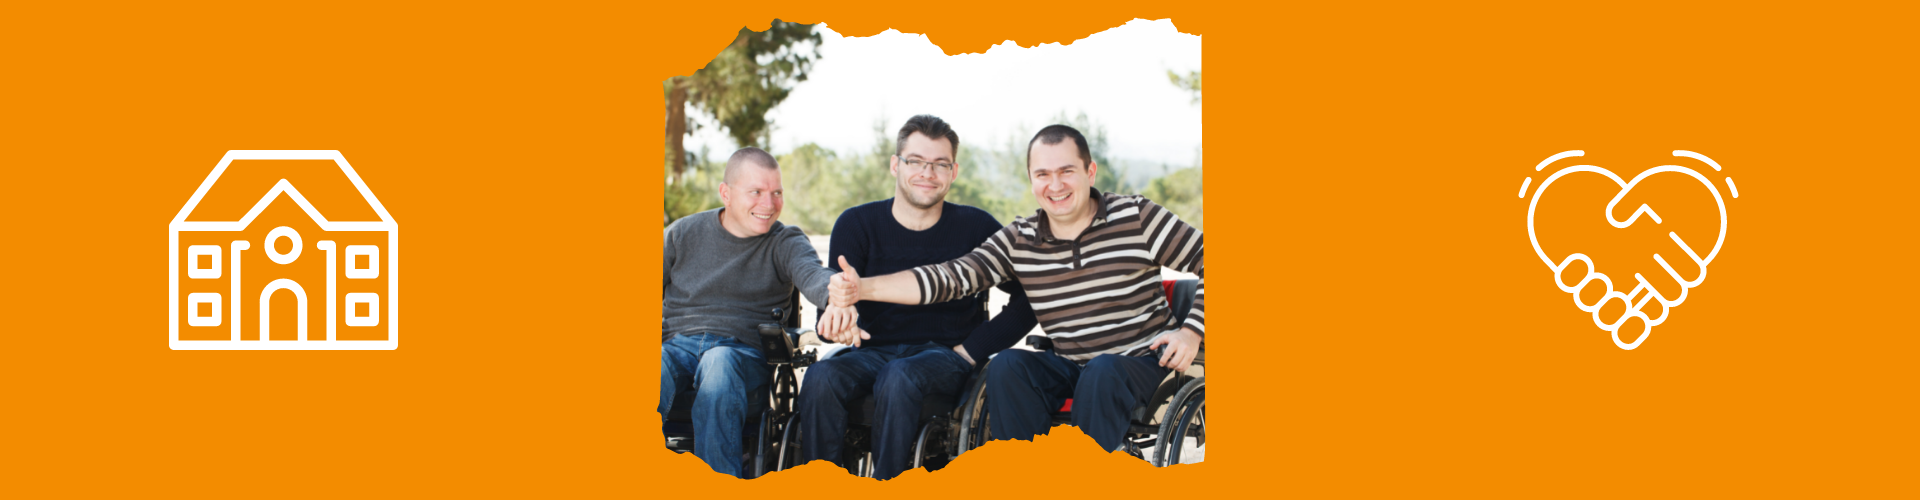 3 junge Männer mit Behinderungen in Rollstühle